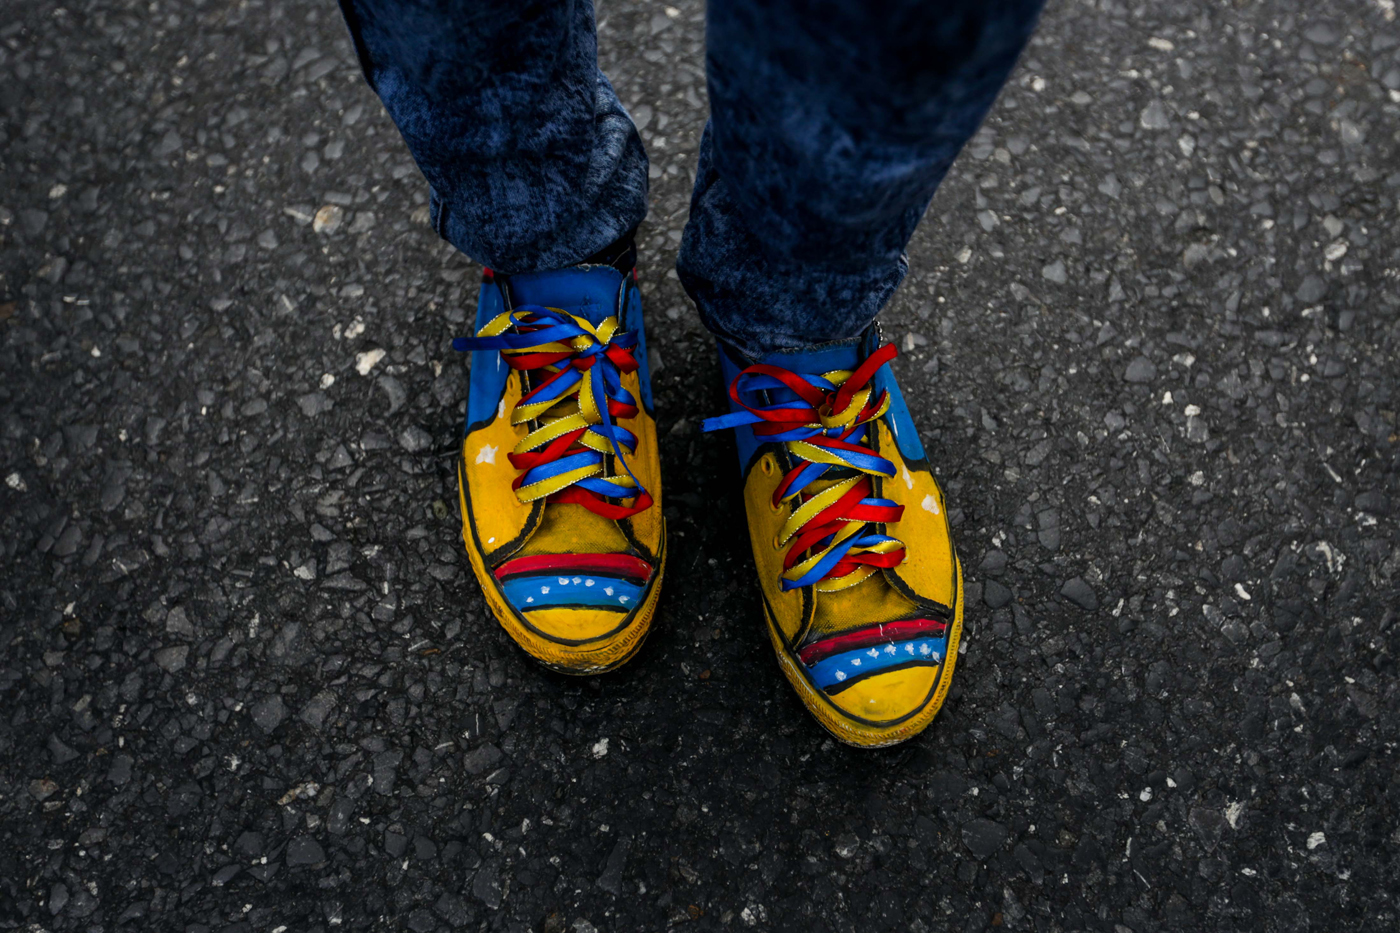 Foto: Estos fueron los zapatos “venezolanos” que lució una de las #Resteadas2016 en la marcha